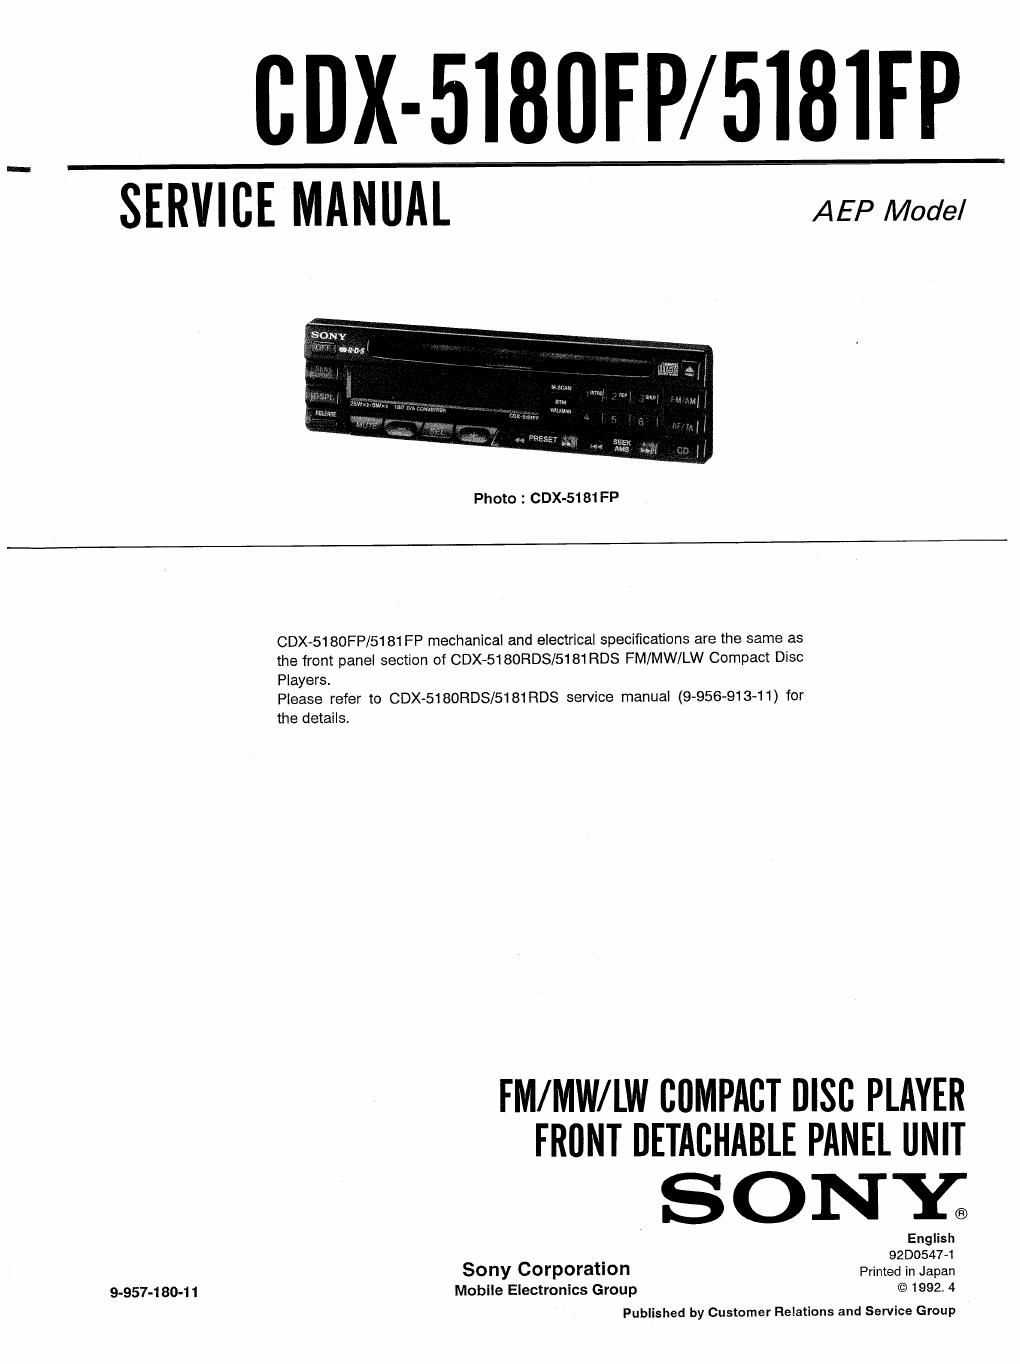 sony cdx 5180 fp service manual